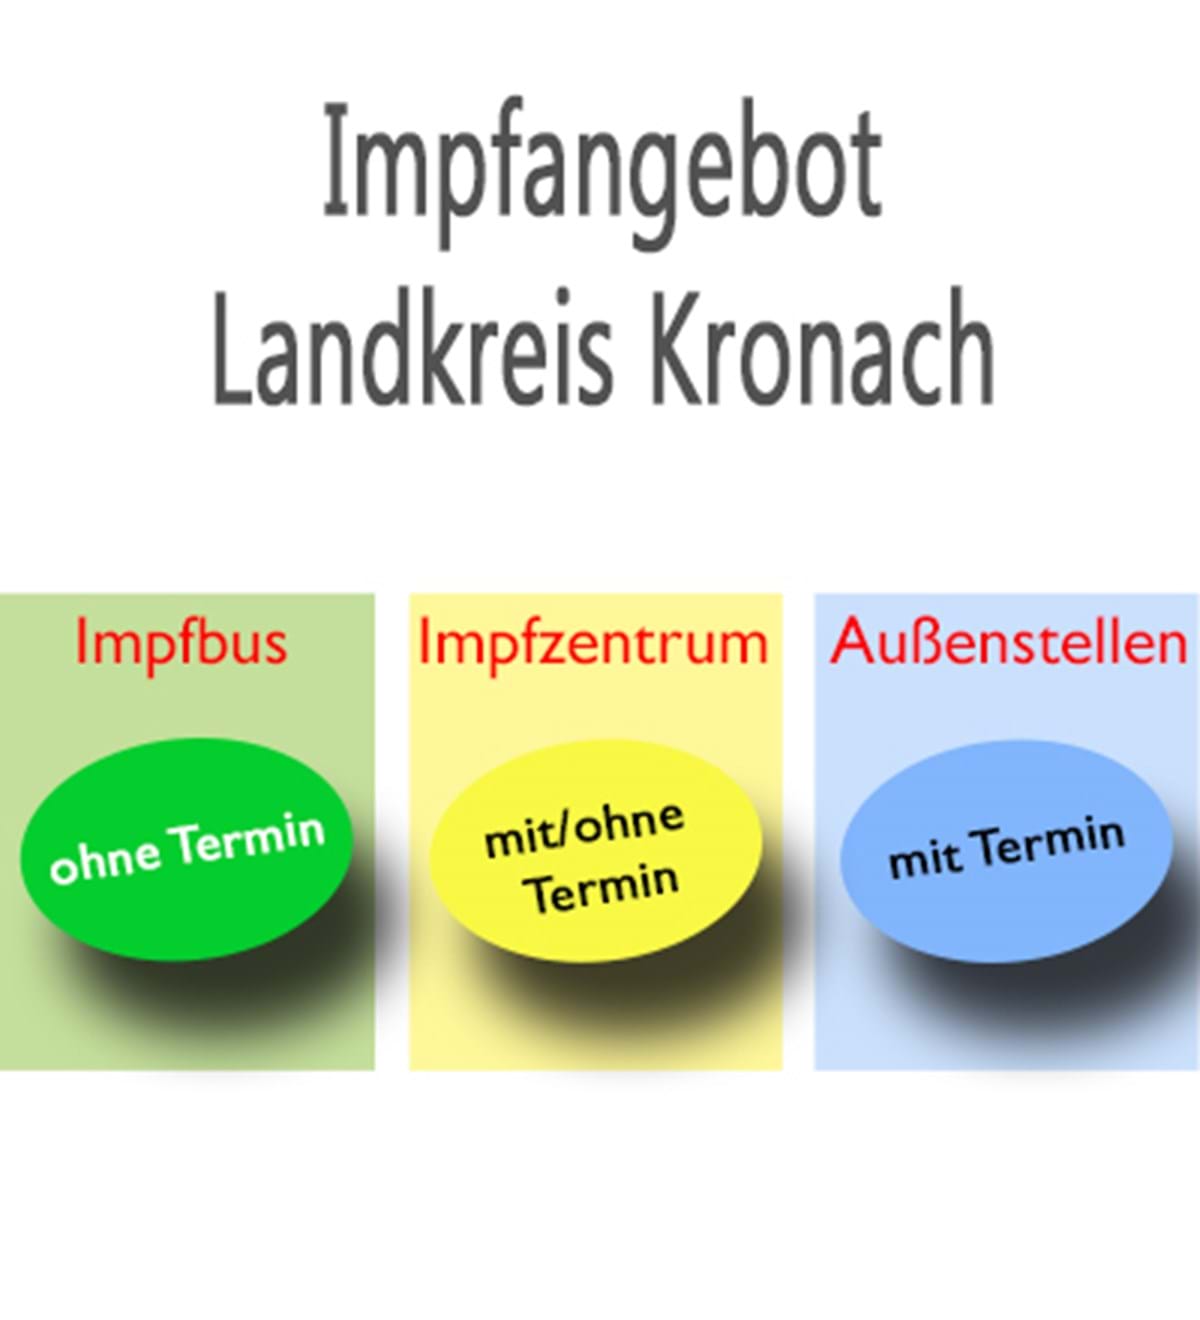 Impfangebote des Landkreises Kronach